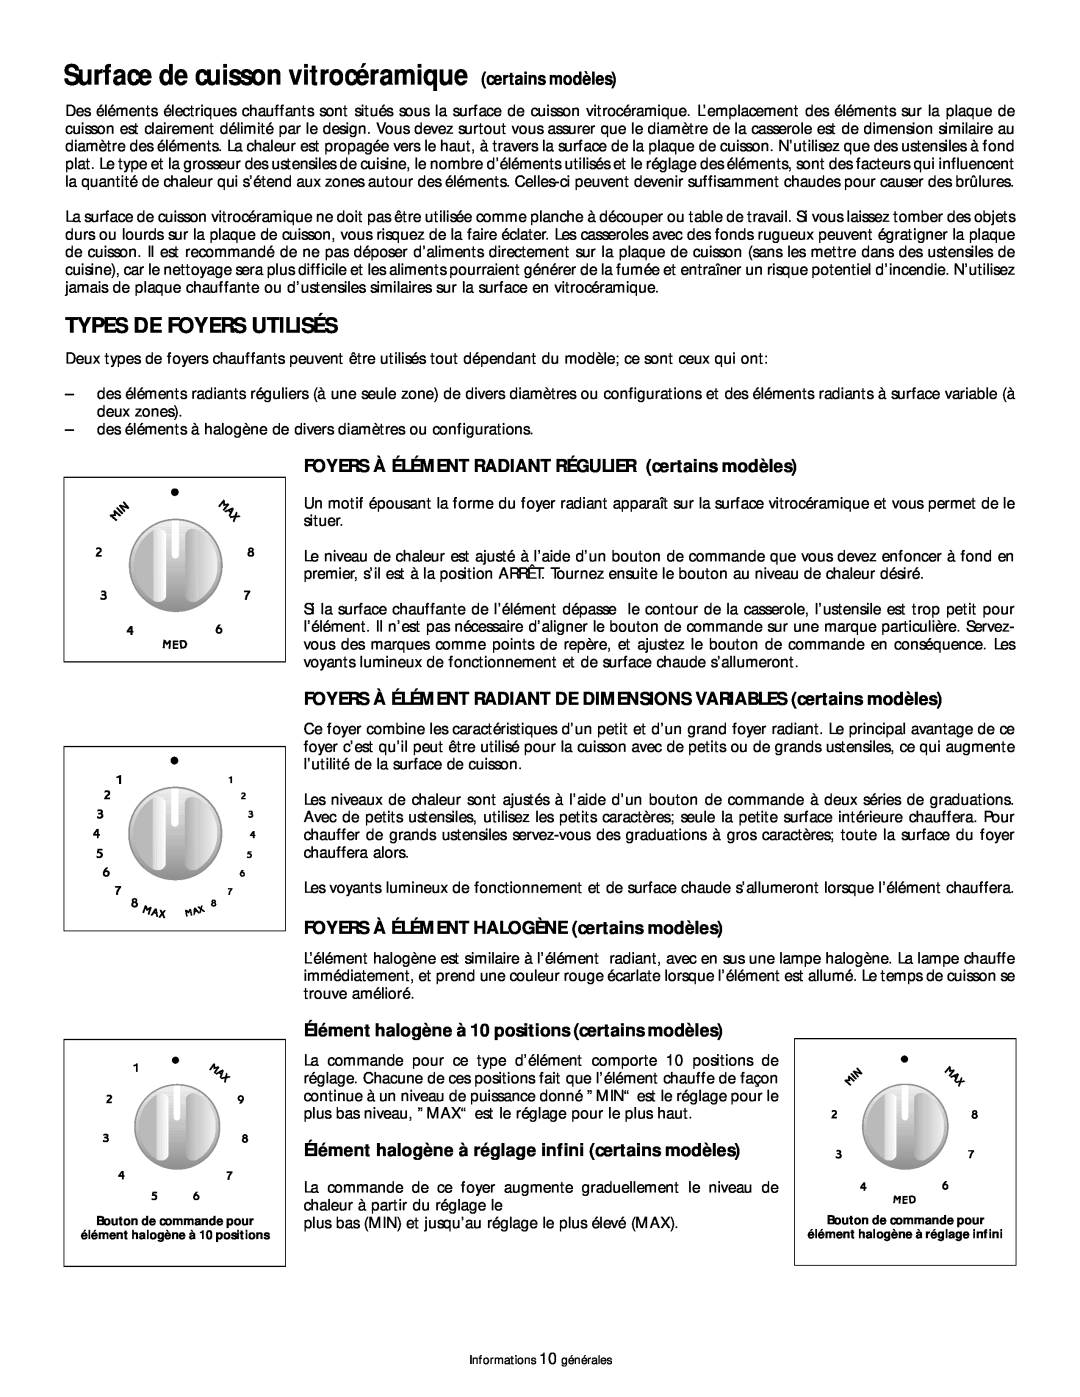 Frigidaire 318200404 manual Surface de cuisson vitrocéramique certains modèles, Types De Foyers Utilisés 